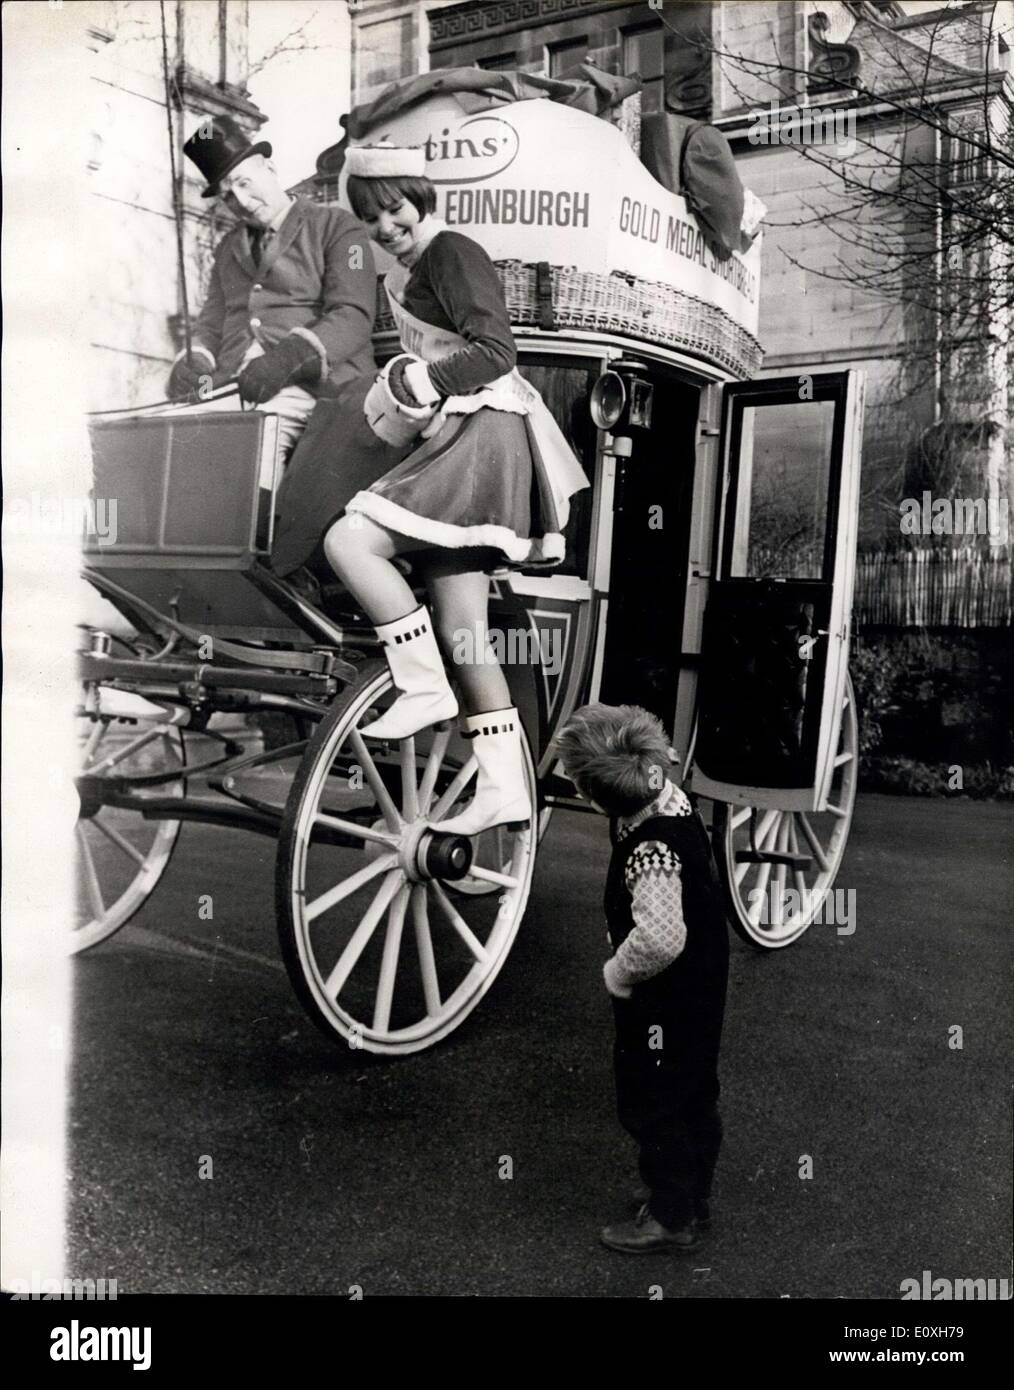 23 dicembre 1966 - Stage Coach per Miss Babbo Natale: Con la sua mini-gonna rossa e bianca, Janette McGrouther, 18 anni, di Edimburgo, sta agendo come Miss Babbo Natale questa settimana. Sta viaggiando intorno alle case dei bambini in un allenatore di palcoscenico trainato da cavalli, consegnando i dolci di Natale e i giocattoli ai bambini. La sua prima chiamata fu alla Lord and Lady Plwarth Home per i bambini Foto Stock